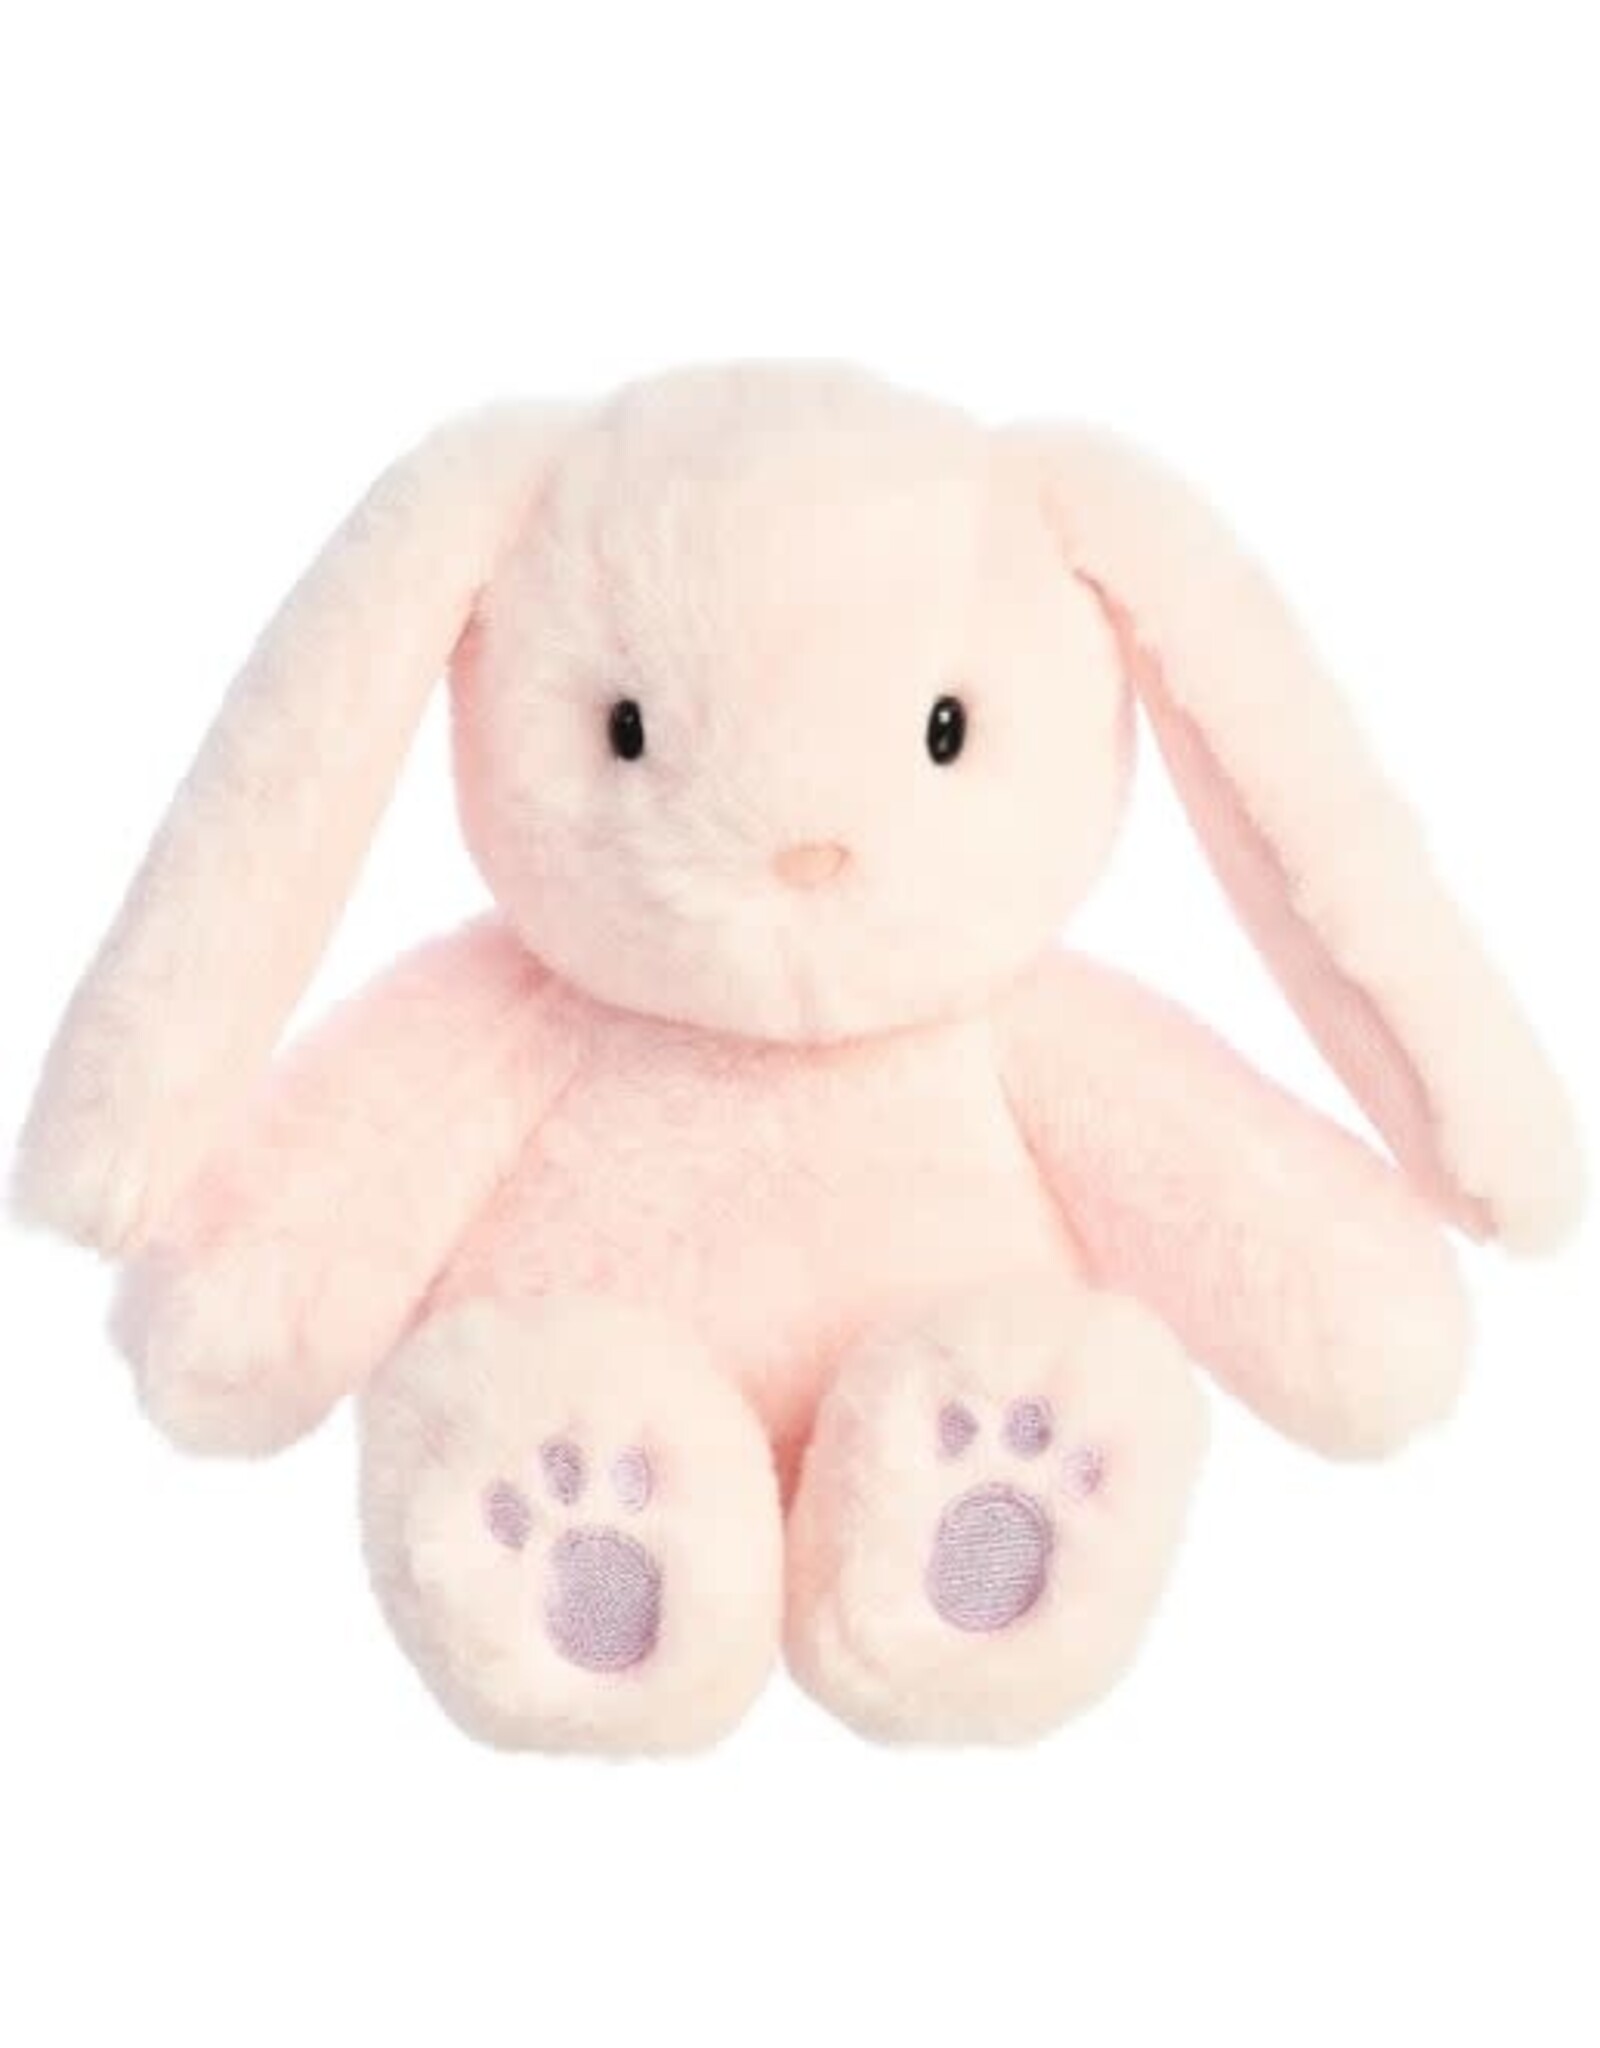 Brulee Bunny - pink